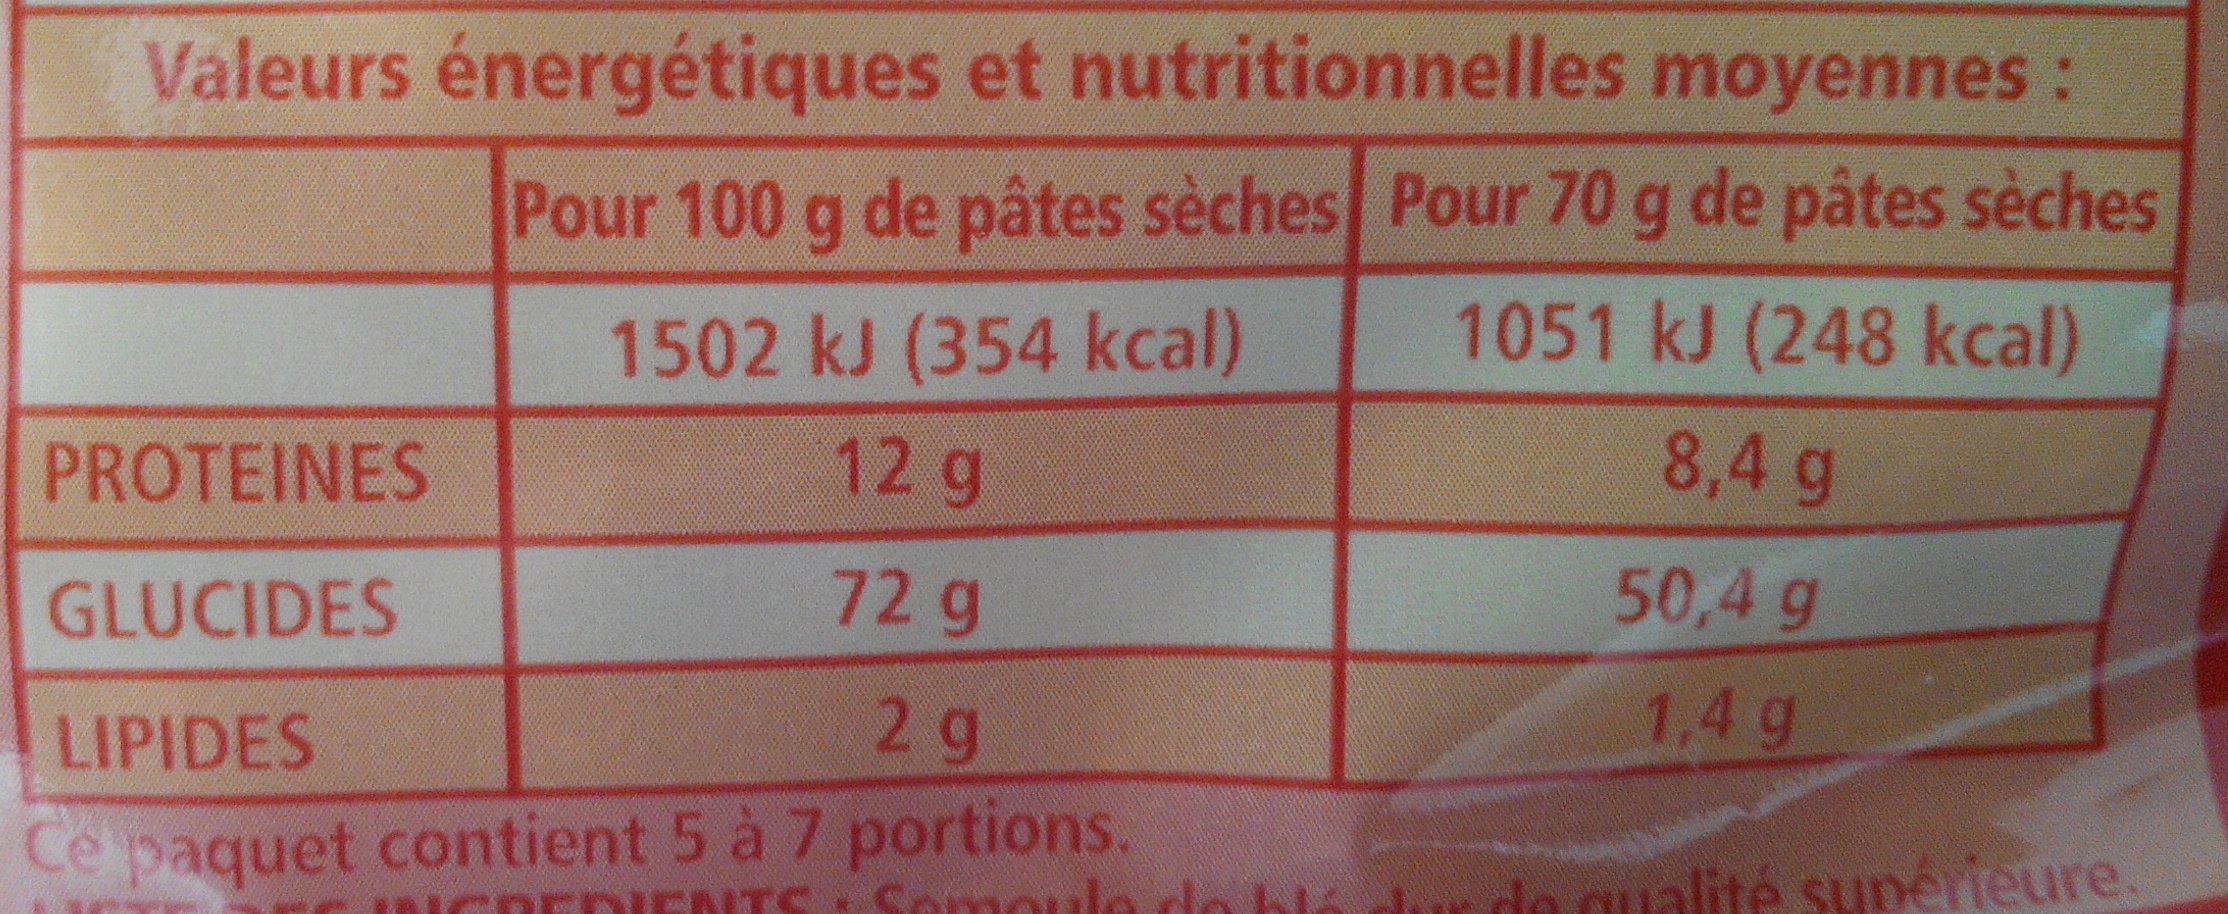 Macaroni de Qualité Supérieure - Voedingswaarden - fr